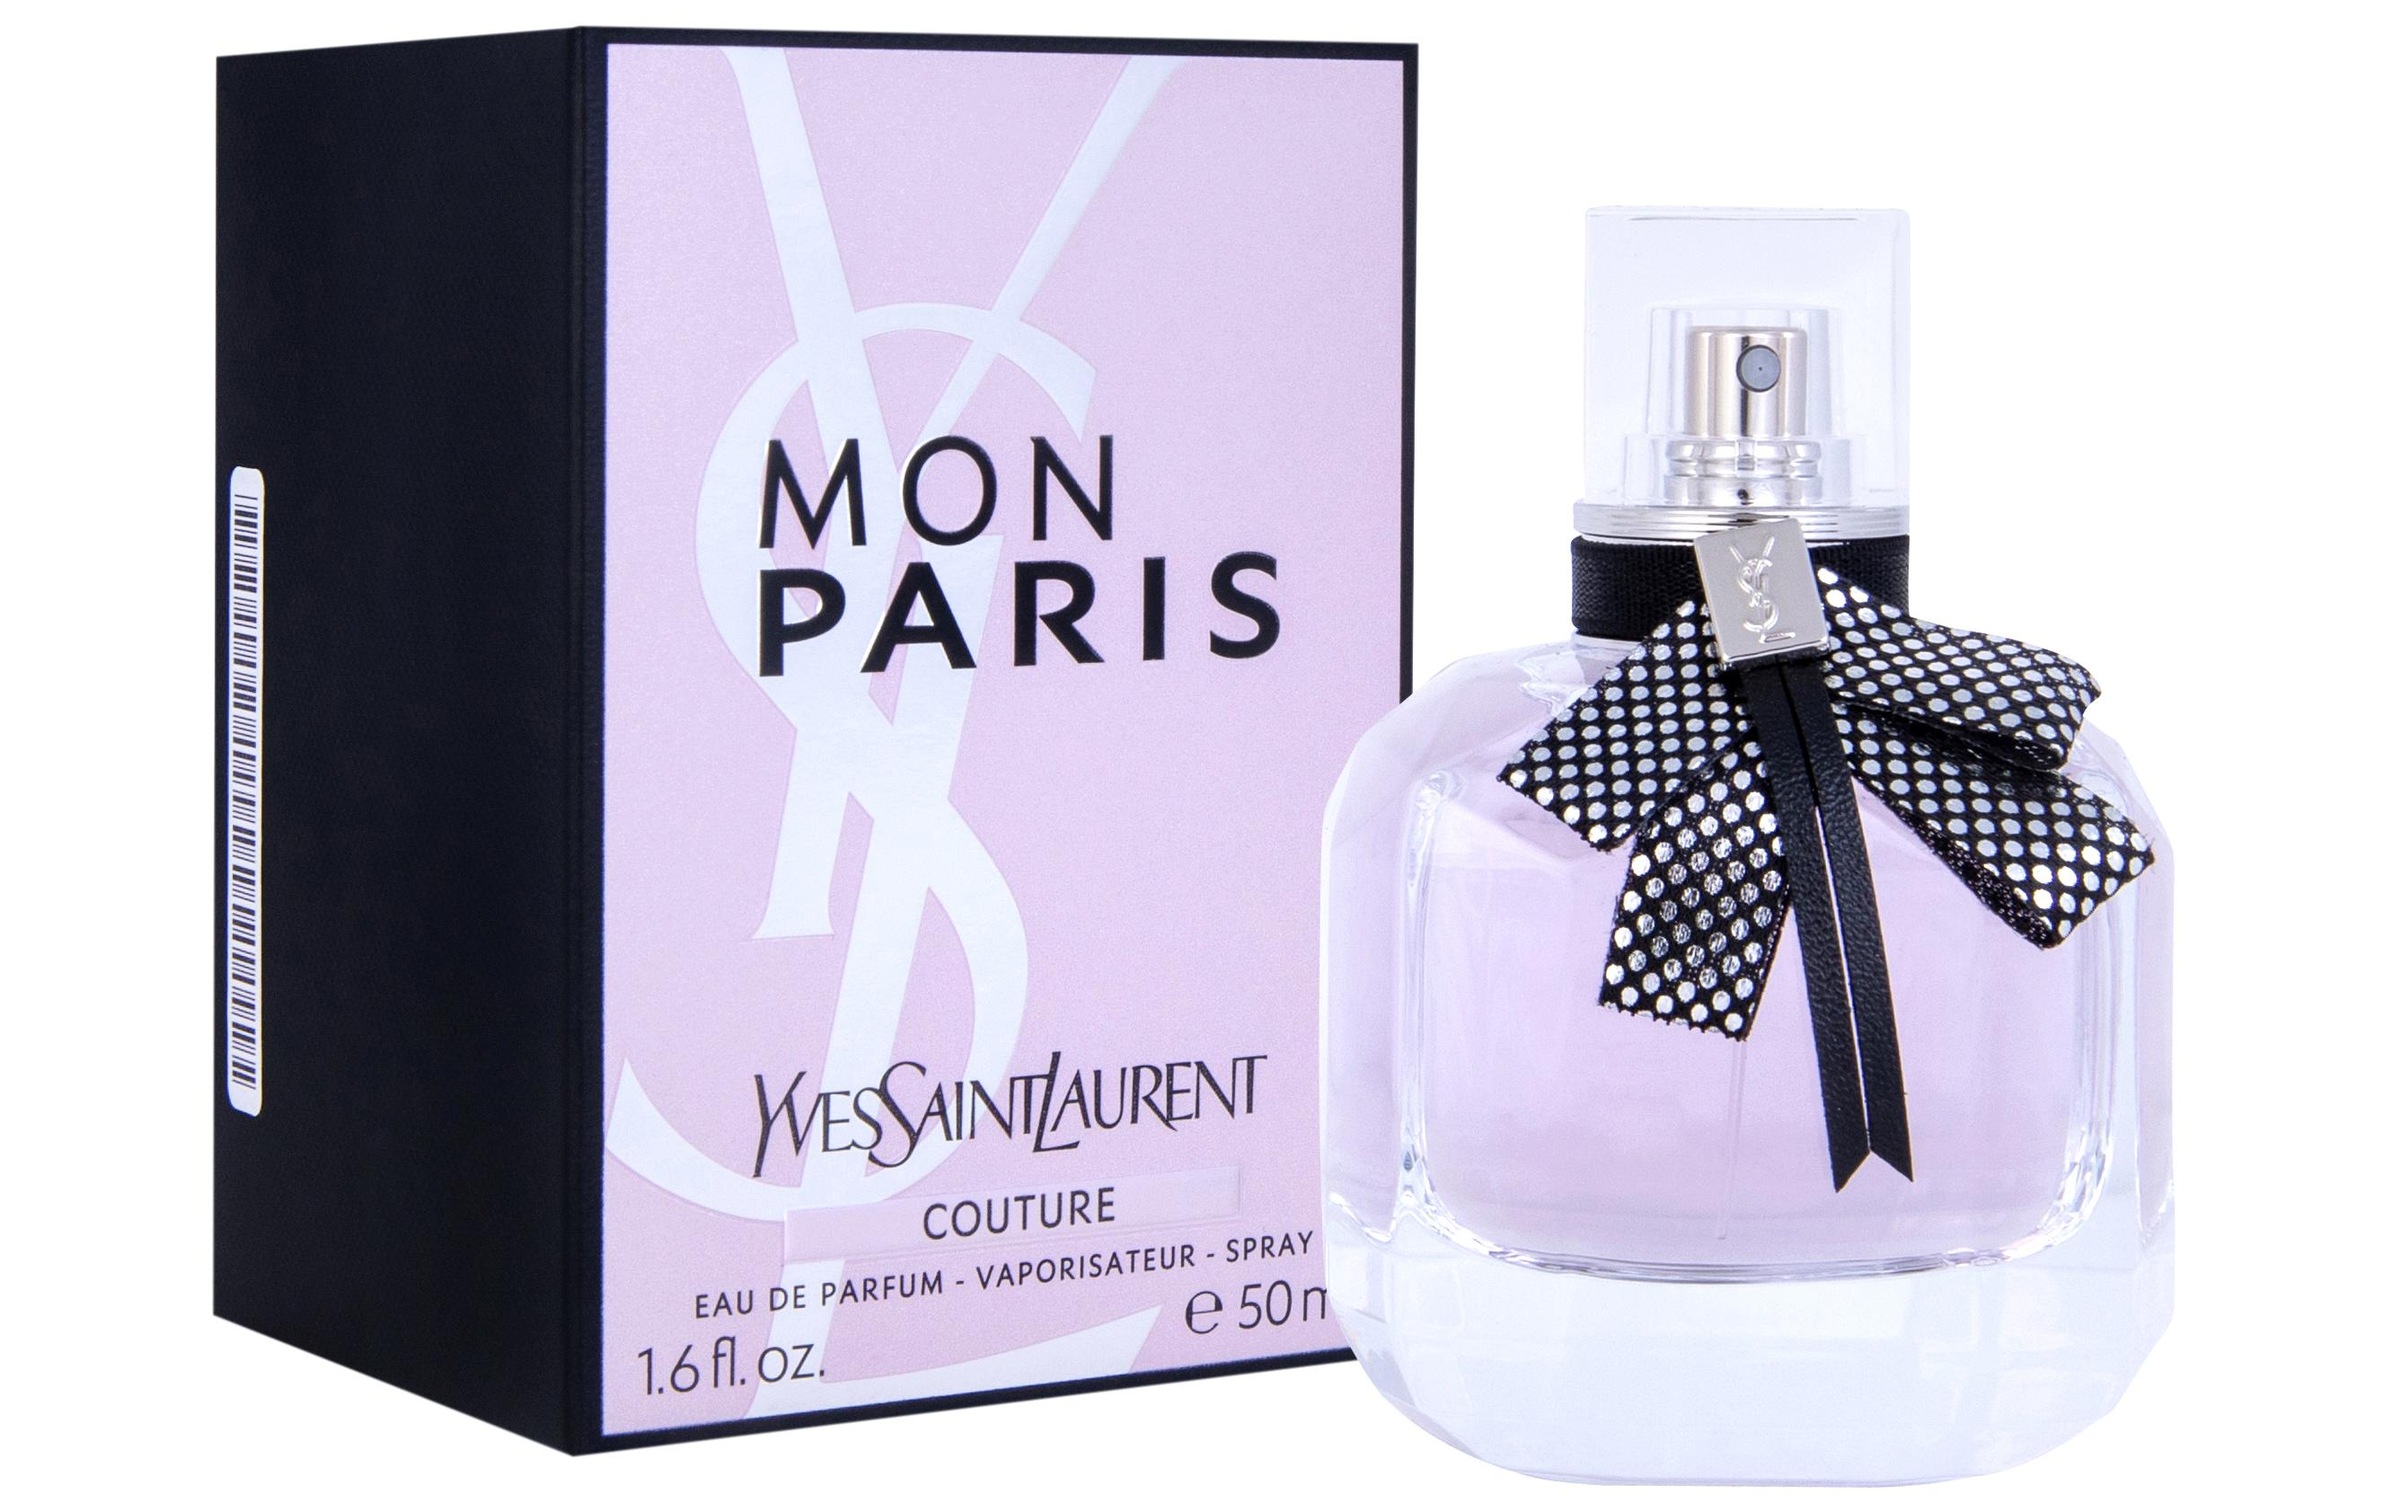 YVES SAINT LAURENT Eau de Parfum »Mon Paris Couture 50 ml«